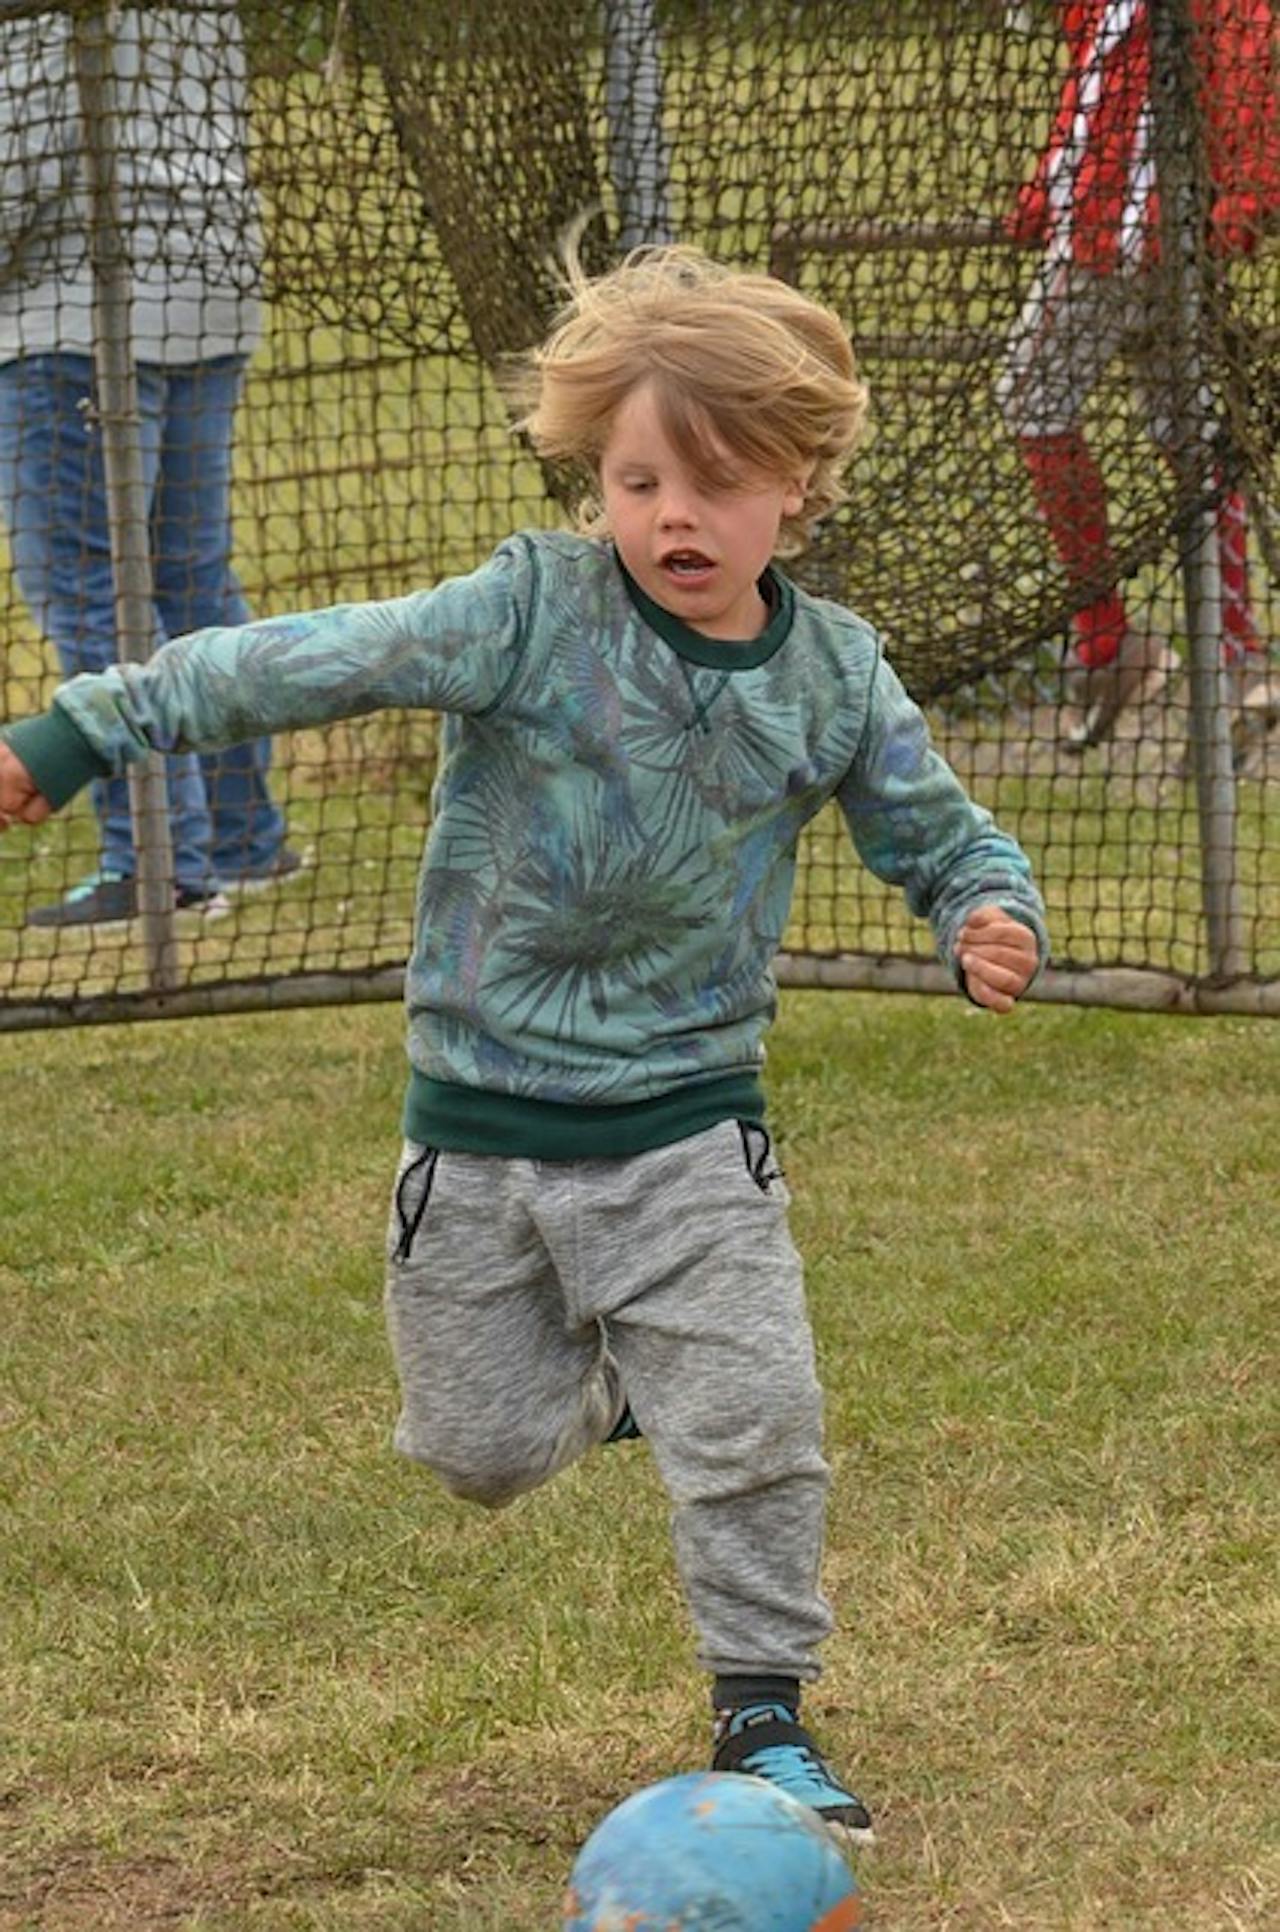 Een jonge jongen die een voetbal in een veld schopt. Achter hem zien we het doel.